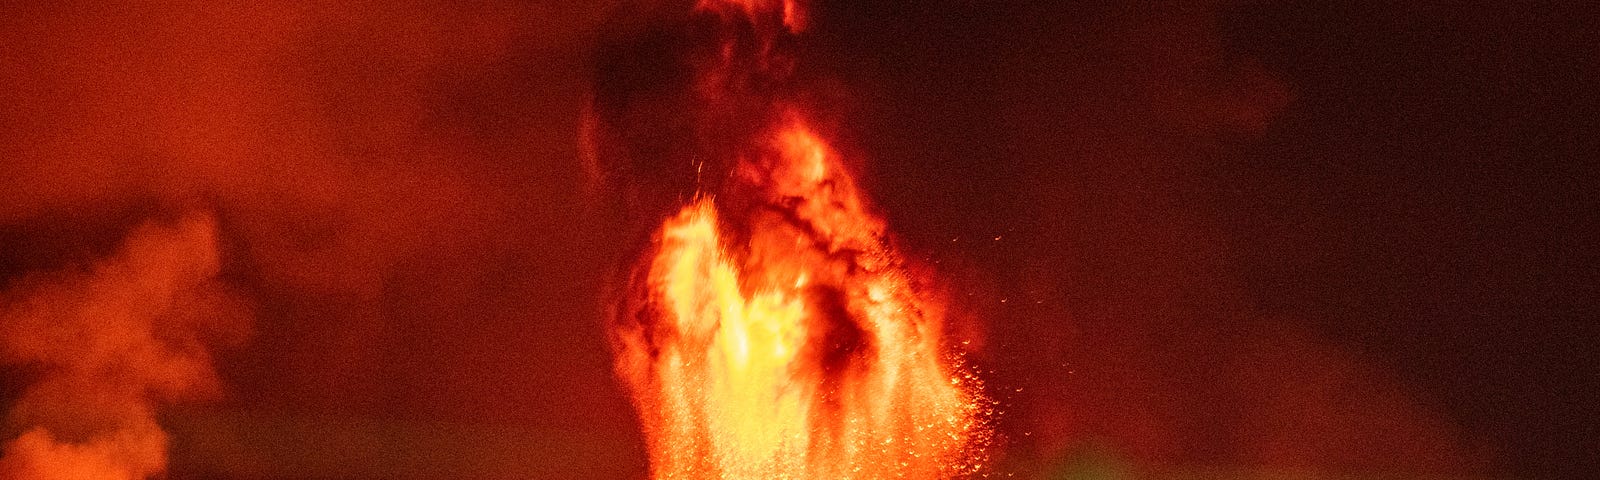 Lava erupting